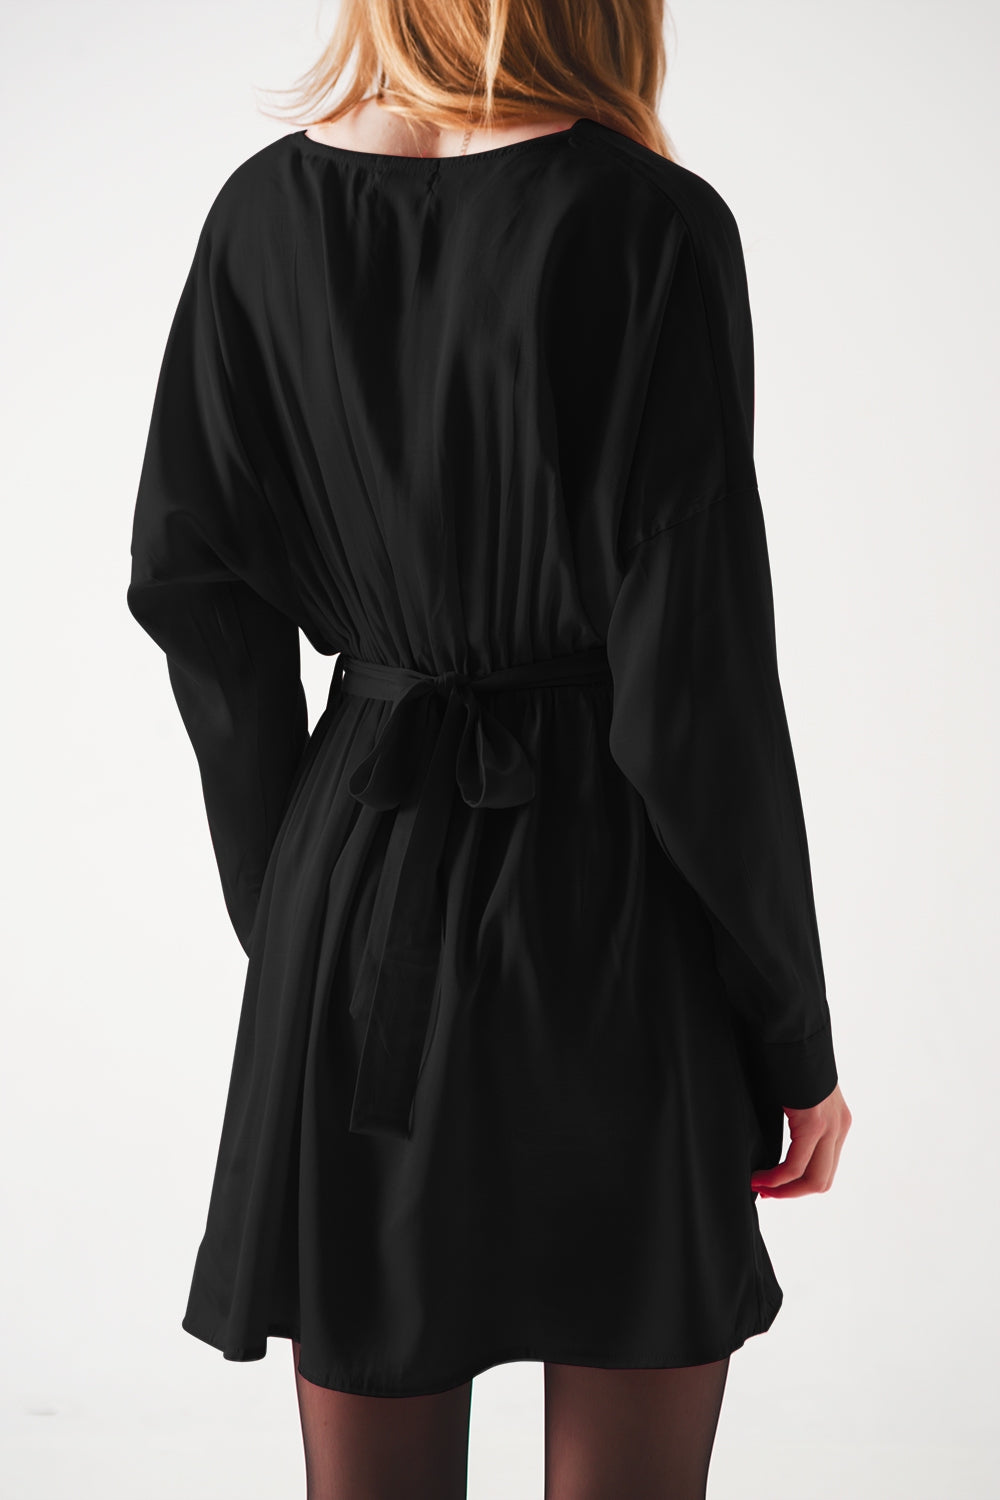 Satin mini dress in black Szua Store